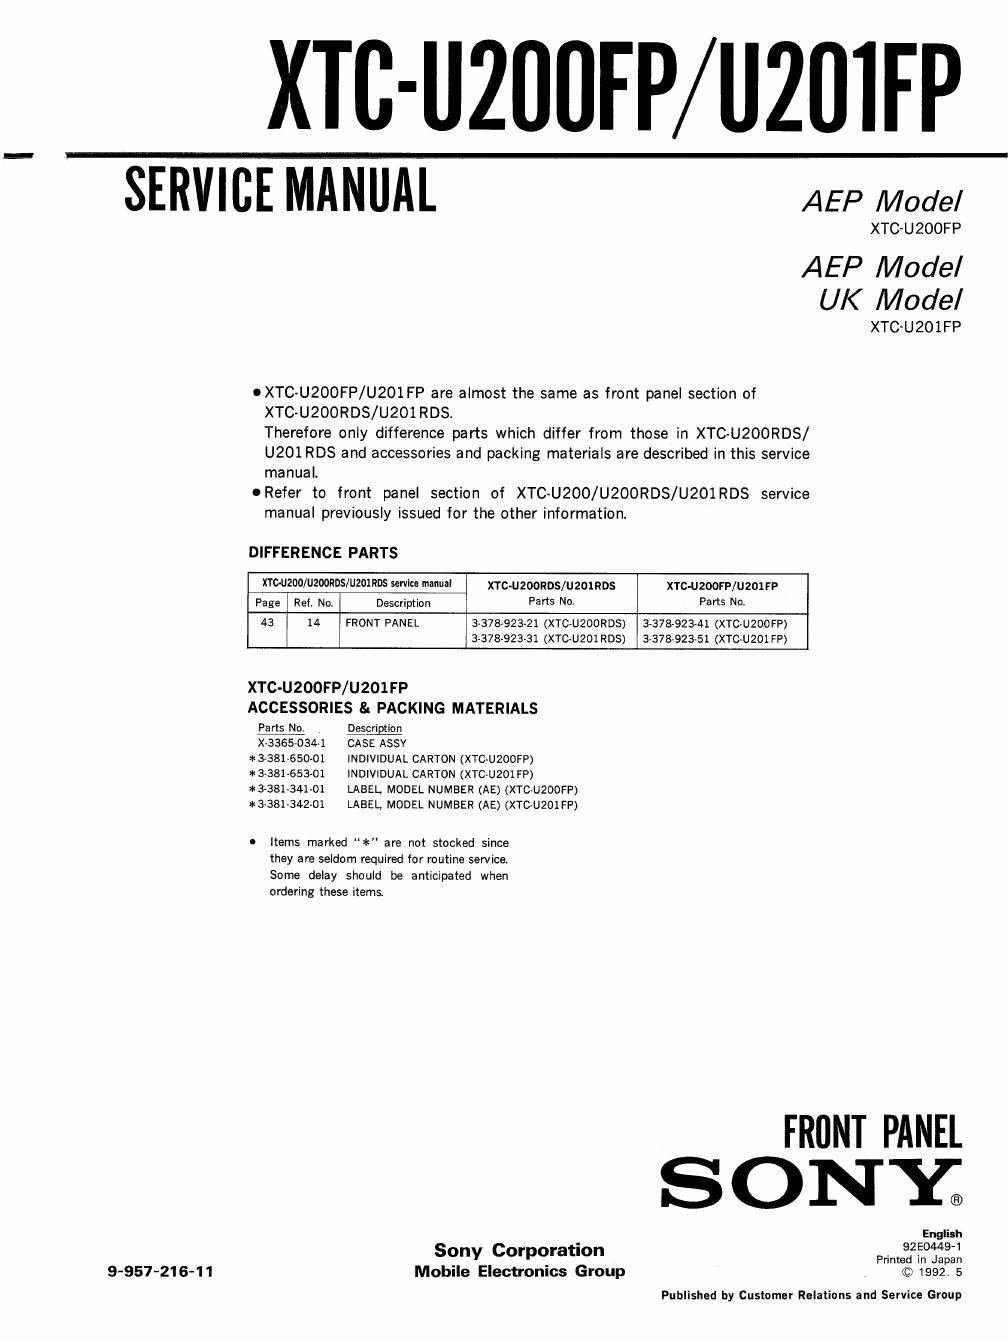 sony xtc u 200 fp service manual